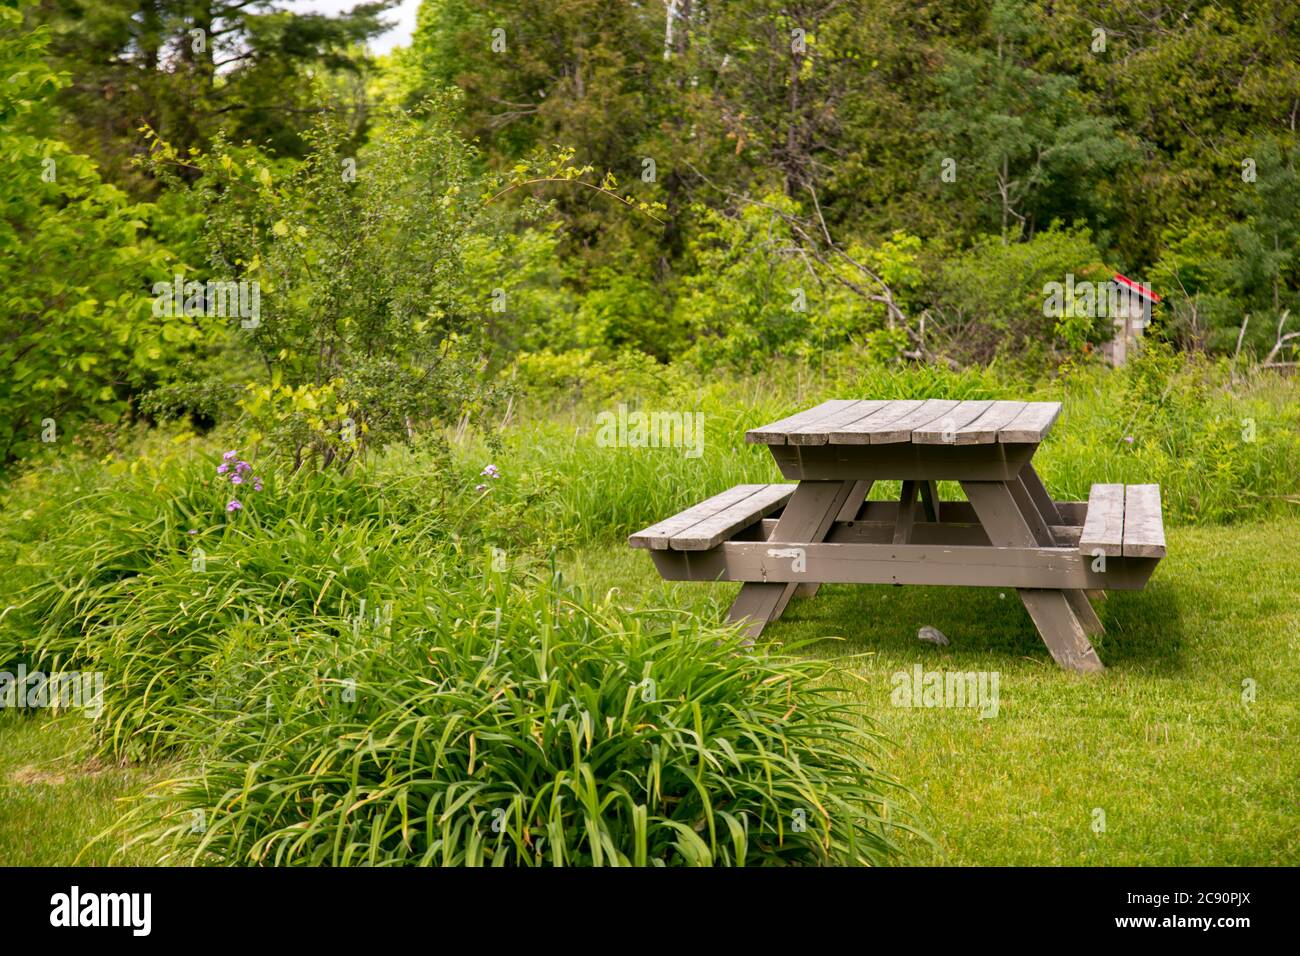 Un tavolo da picnic in legno si trova su un'area di erba tagliata, circondata da un giardino primaverile e da aree boschive con alberi dietro di esso. Foto Stock